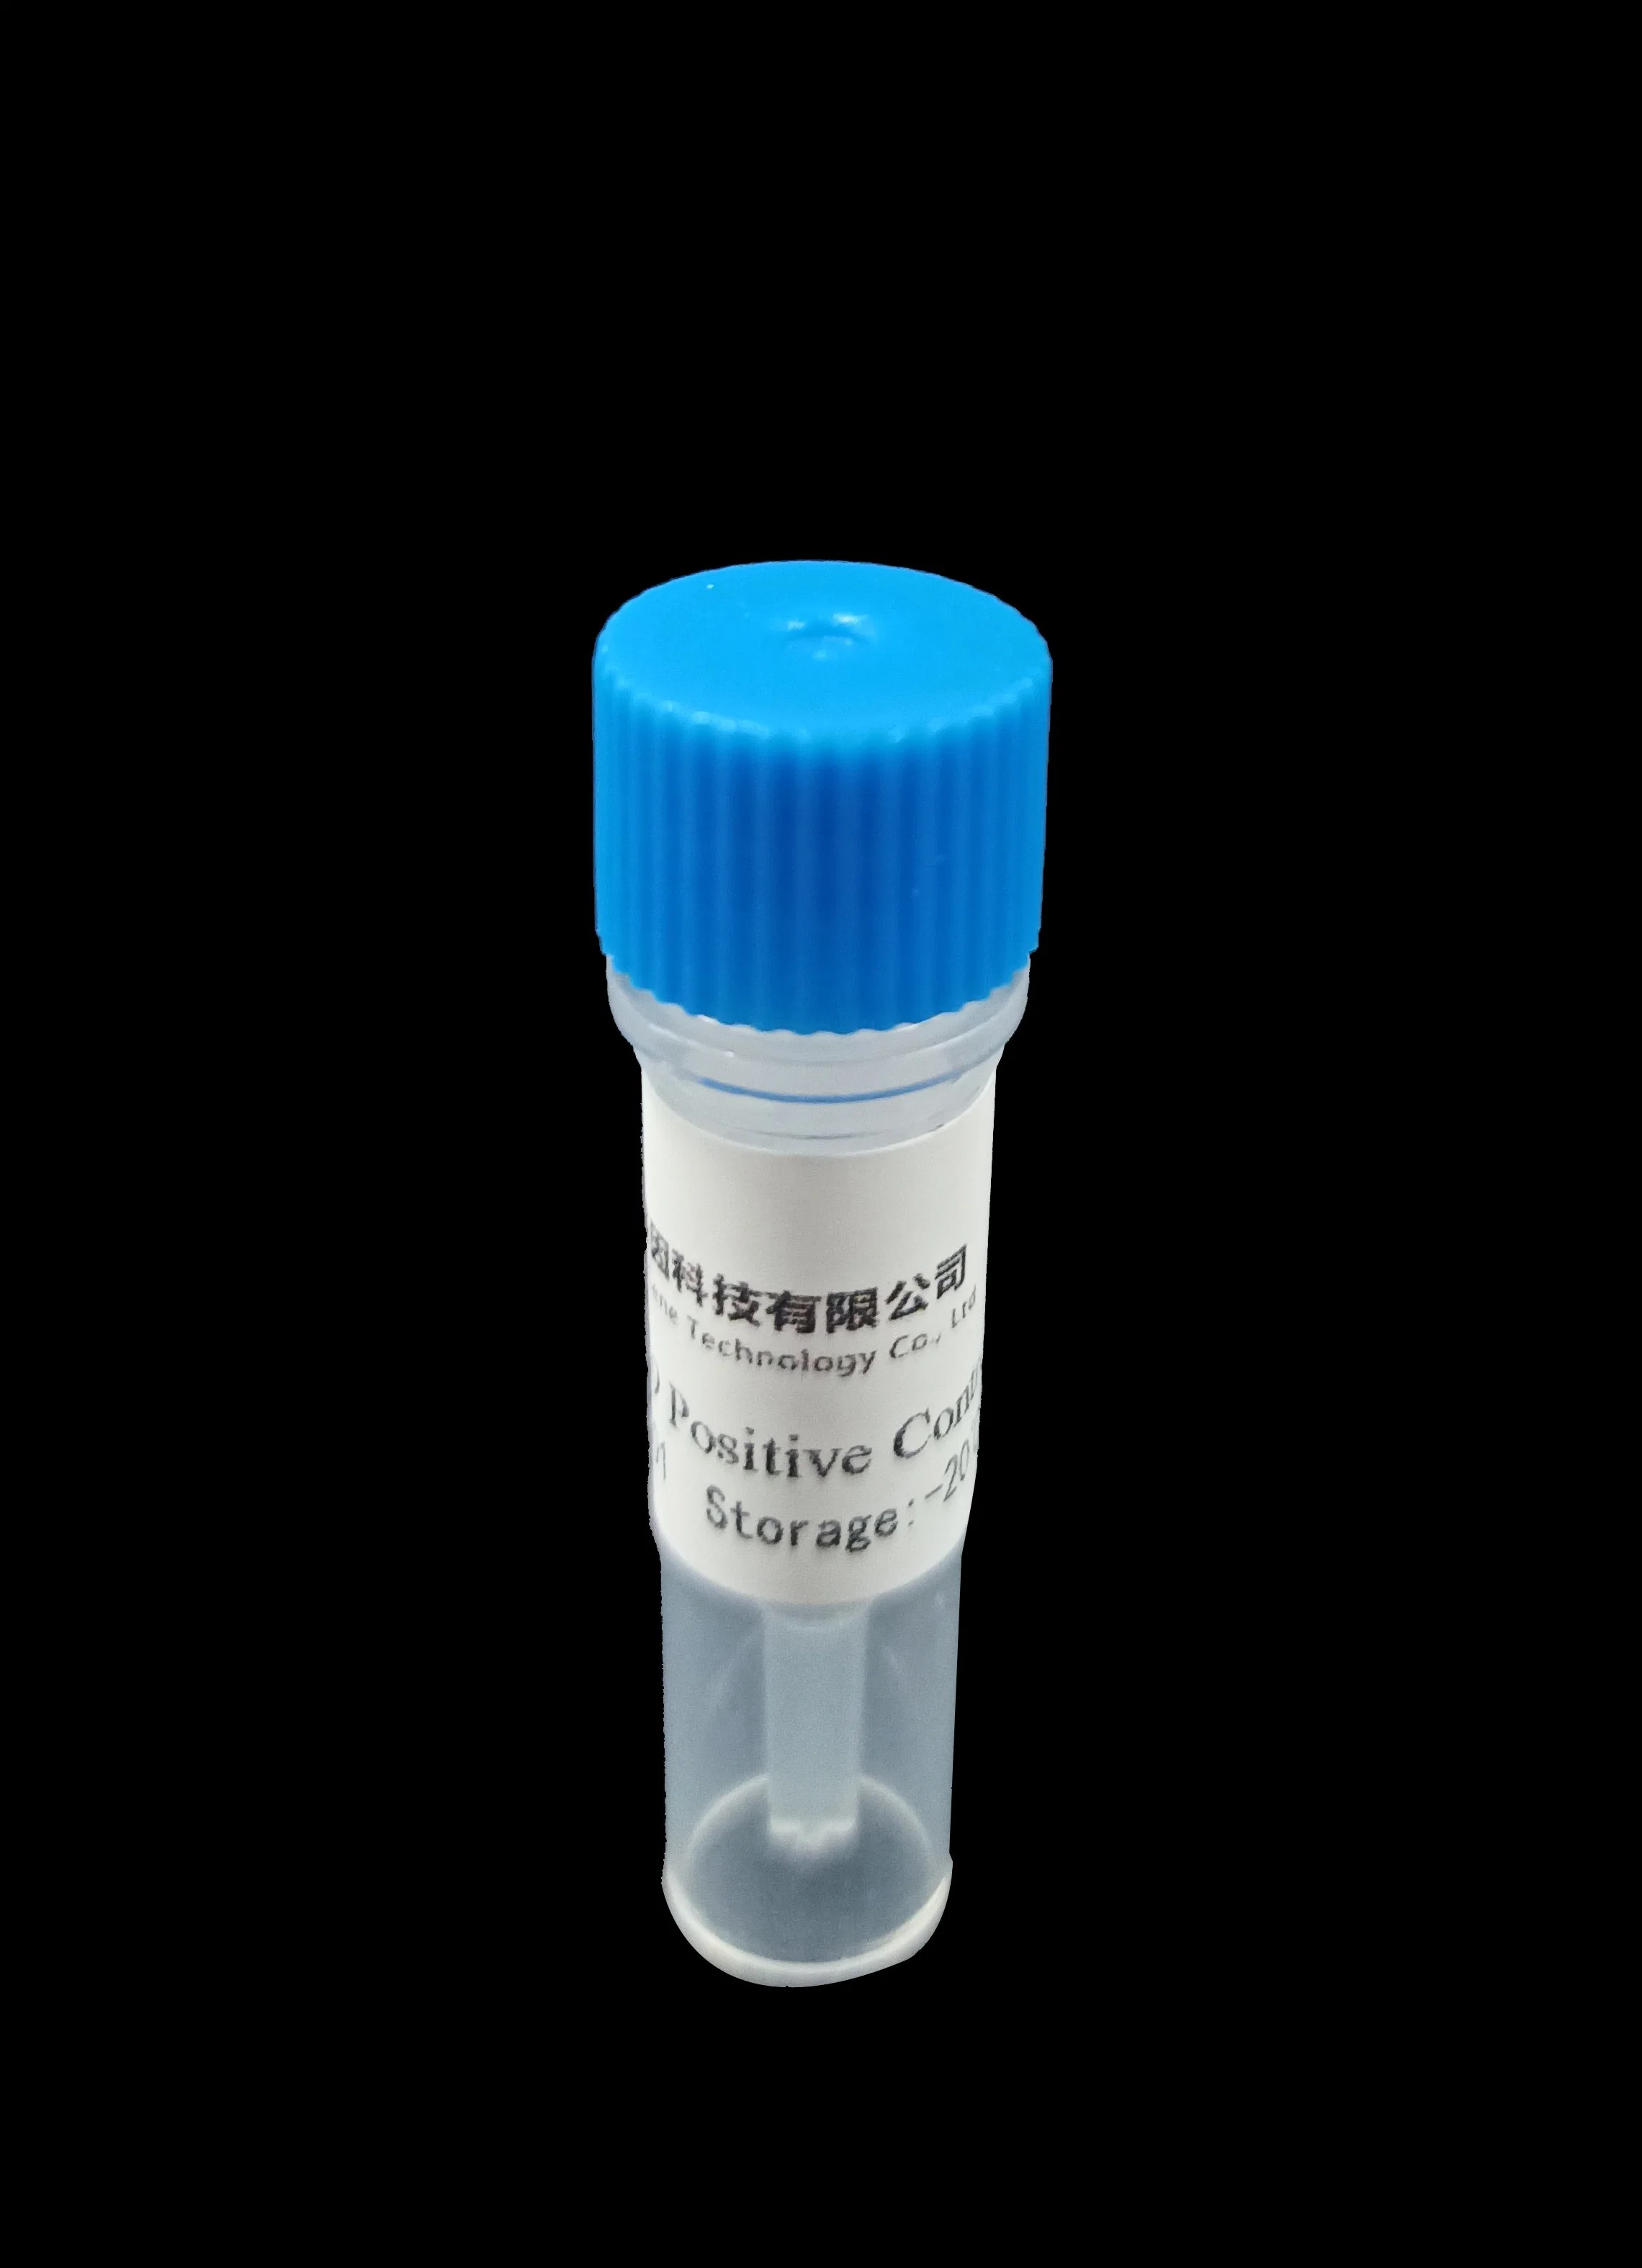 Medizinischer Bedarf PCR-Prüfungs-Installationssatz, medizinischer Produkte PCR-Extraktion-Installationssatz, Nukleinsäure-schnelle Prüfung PCR-Prüfungs-Maschine mit PCR-Prüfung